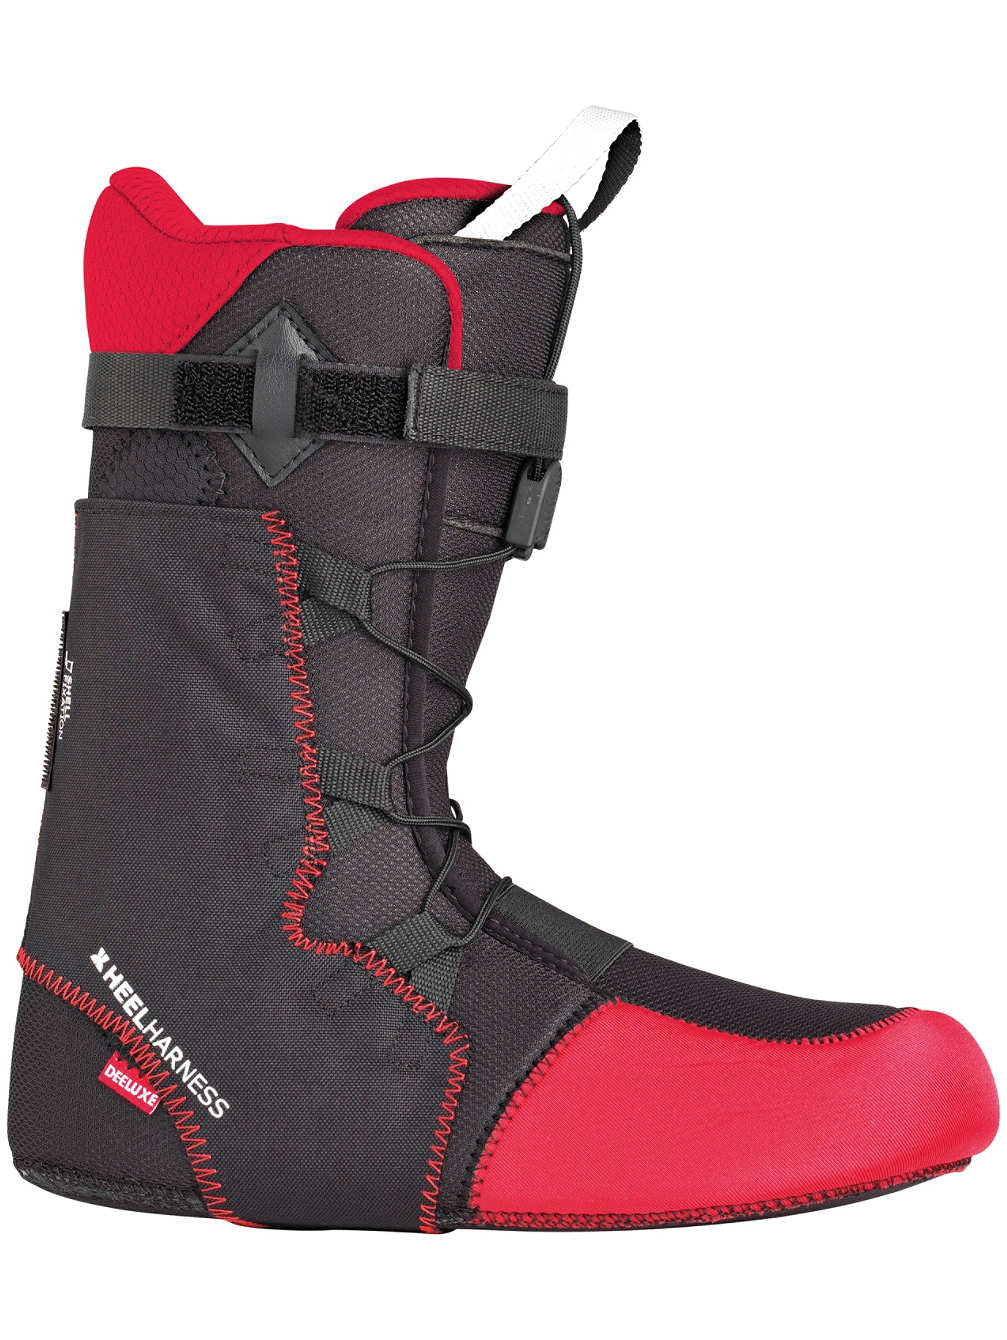 Wkładki do butów snowboardowych Thermo Flex Deeluxe Premium Liner, rozmiar 40/26cm